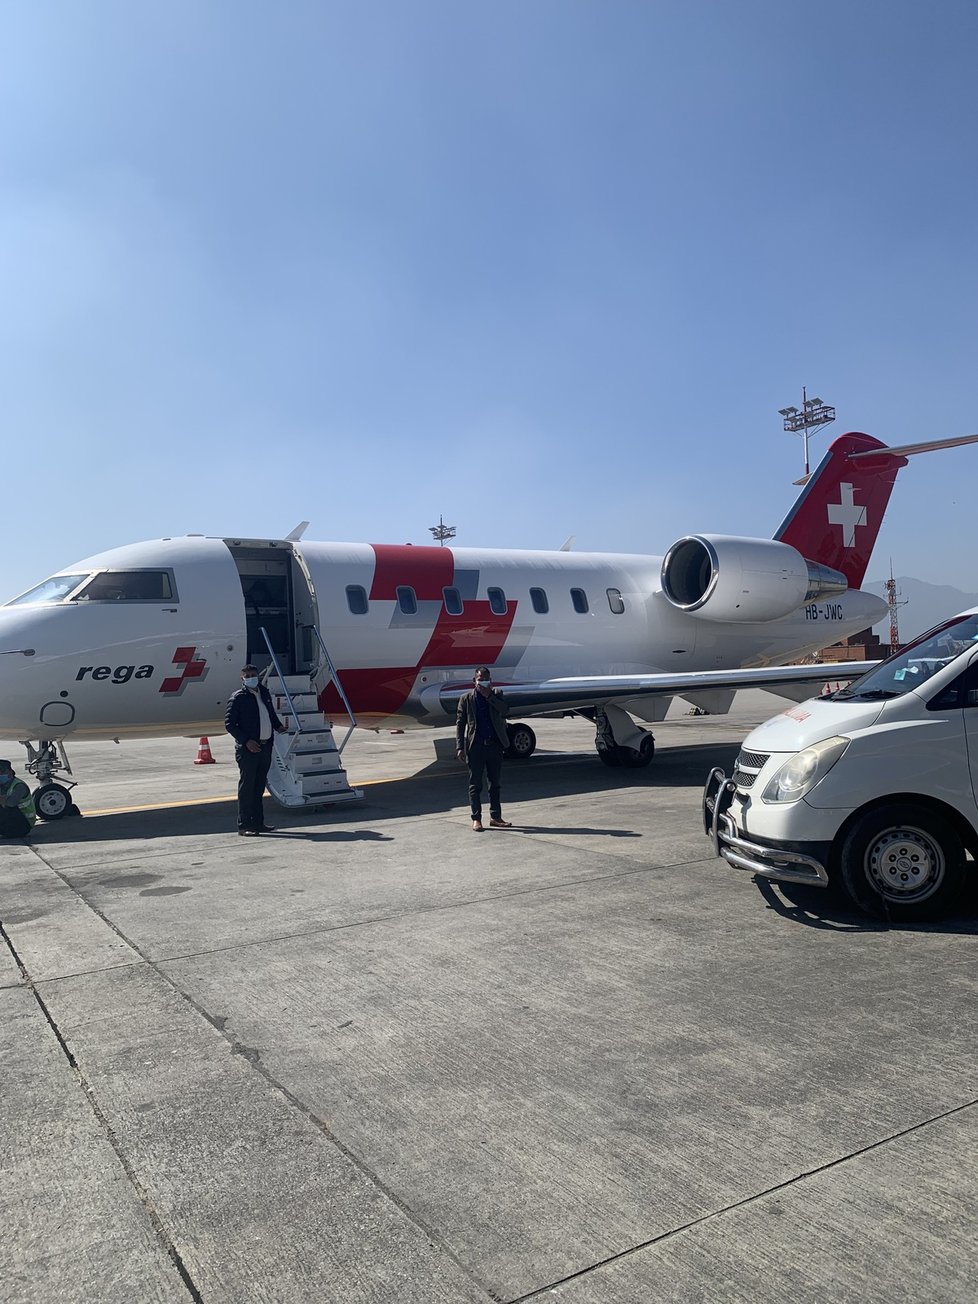 Švýcarská záchranná služba byla jediná, která byla ochotna letět do Nepálu pro nemocnou ženu.